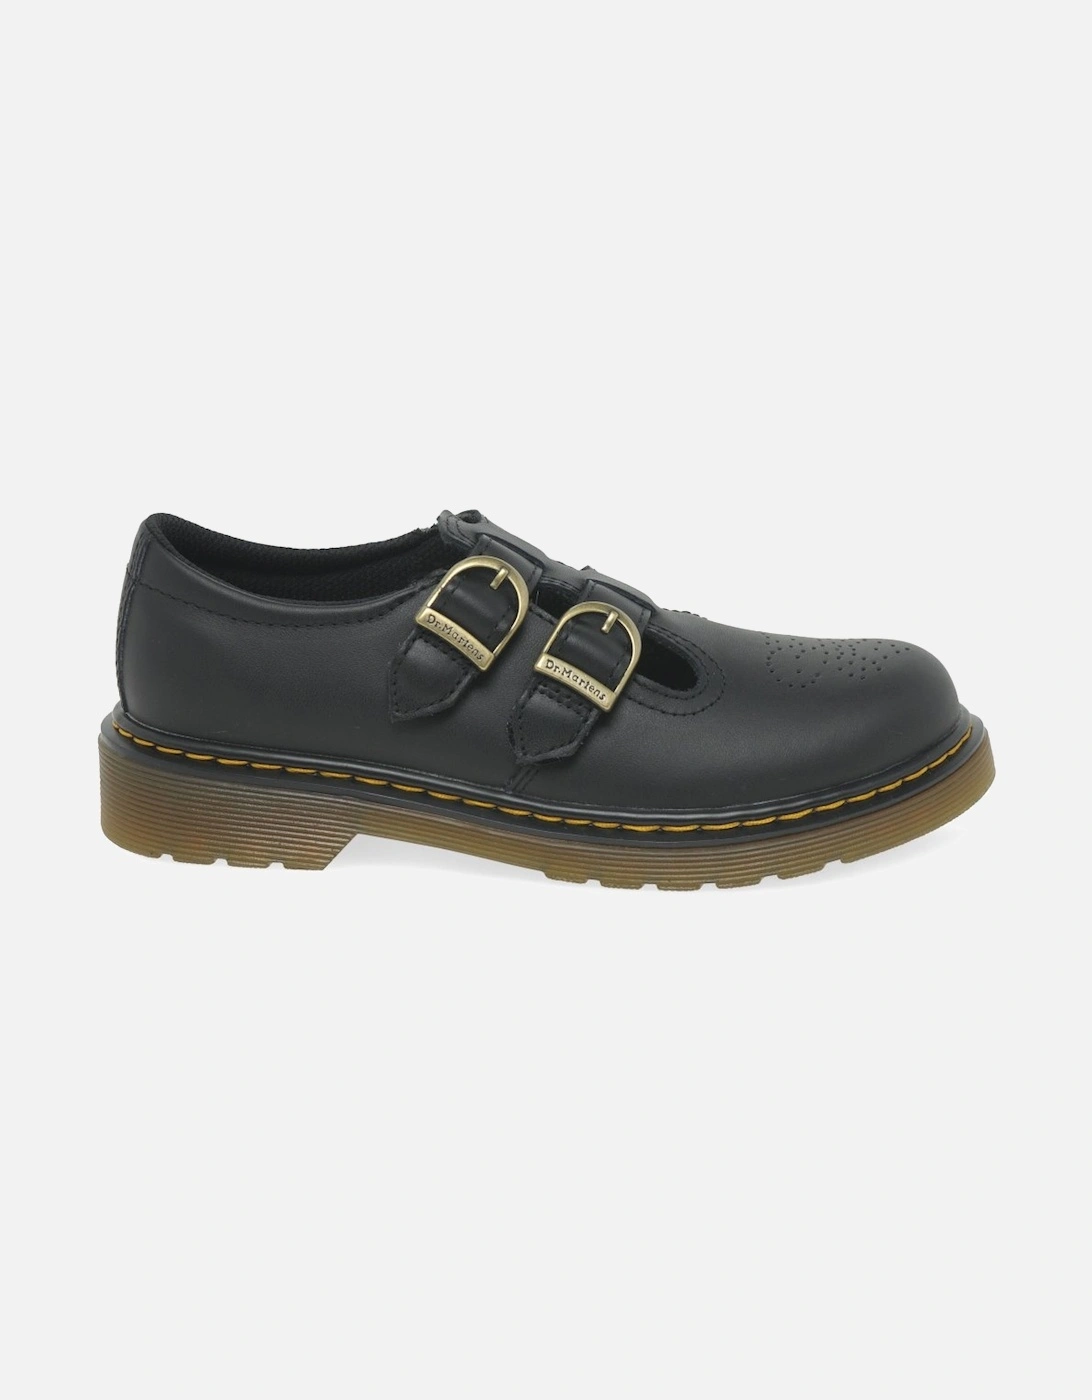 8065 Buckle Girls Junior School Shoes